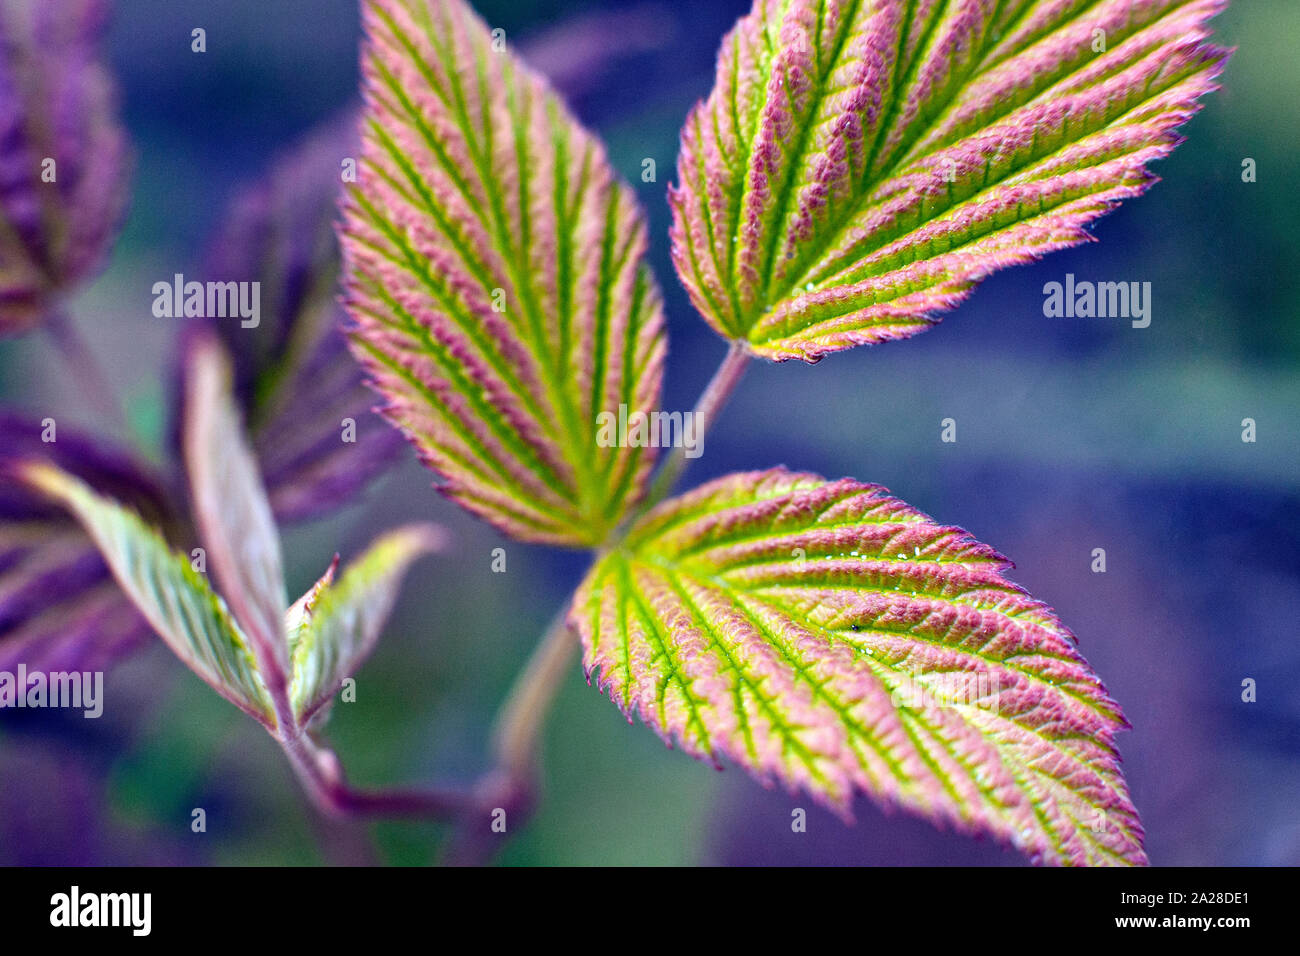 New leaves of The European dewberry Rubus caesius in closeup Stock Photo